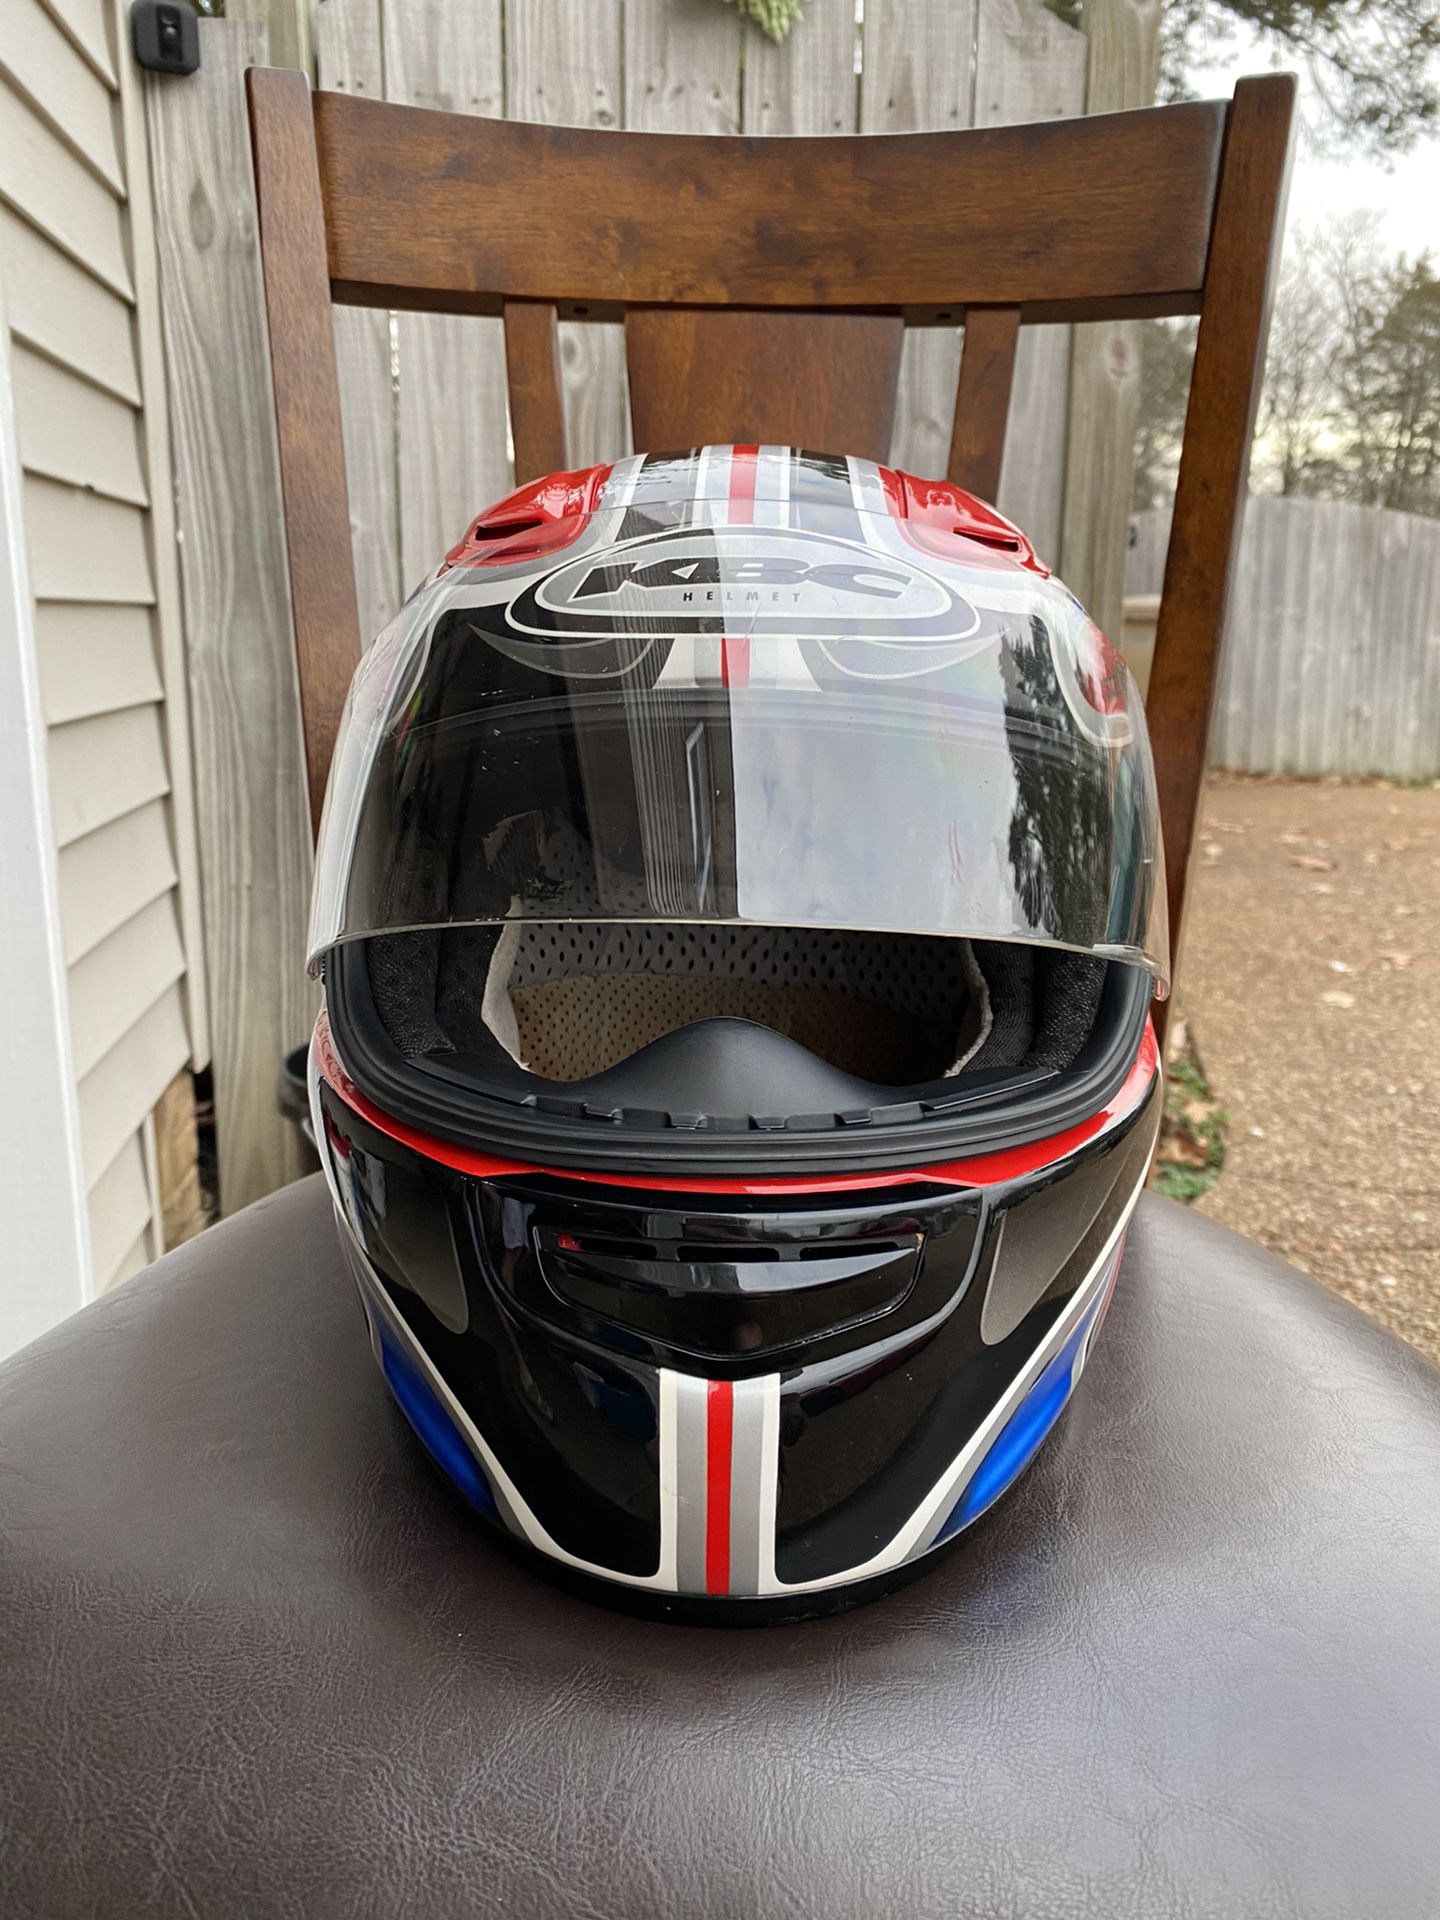 KBC motorcycle helmet